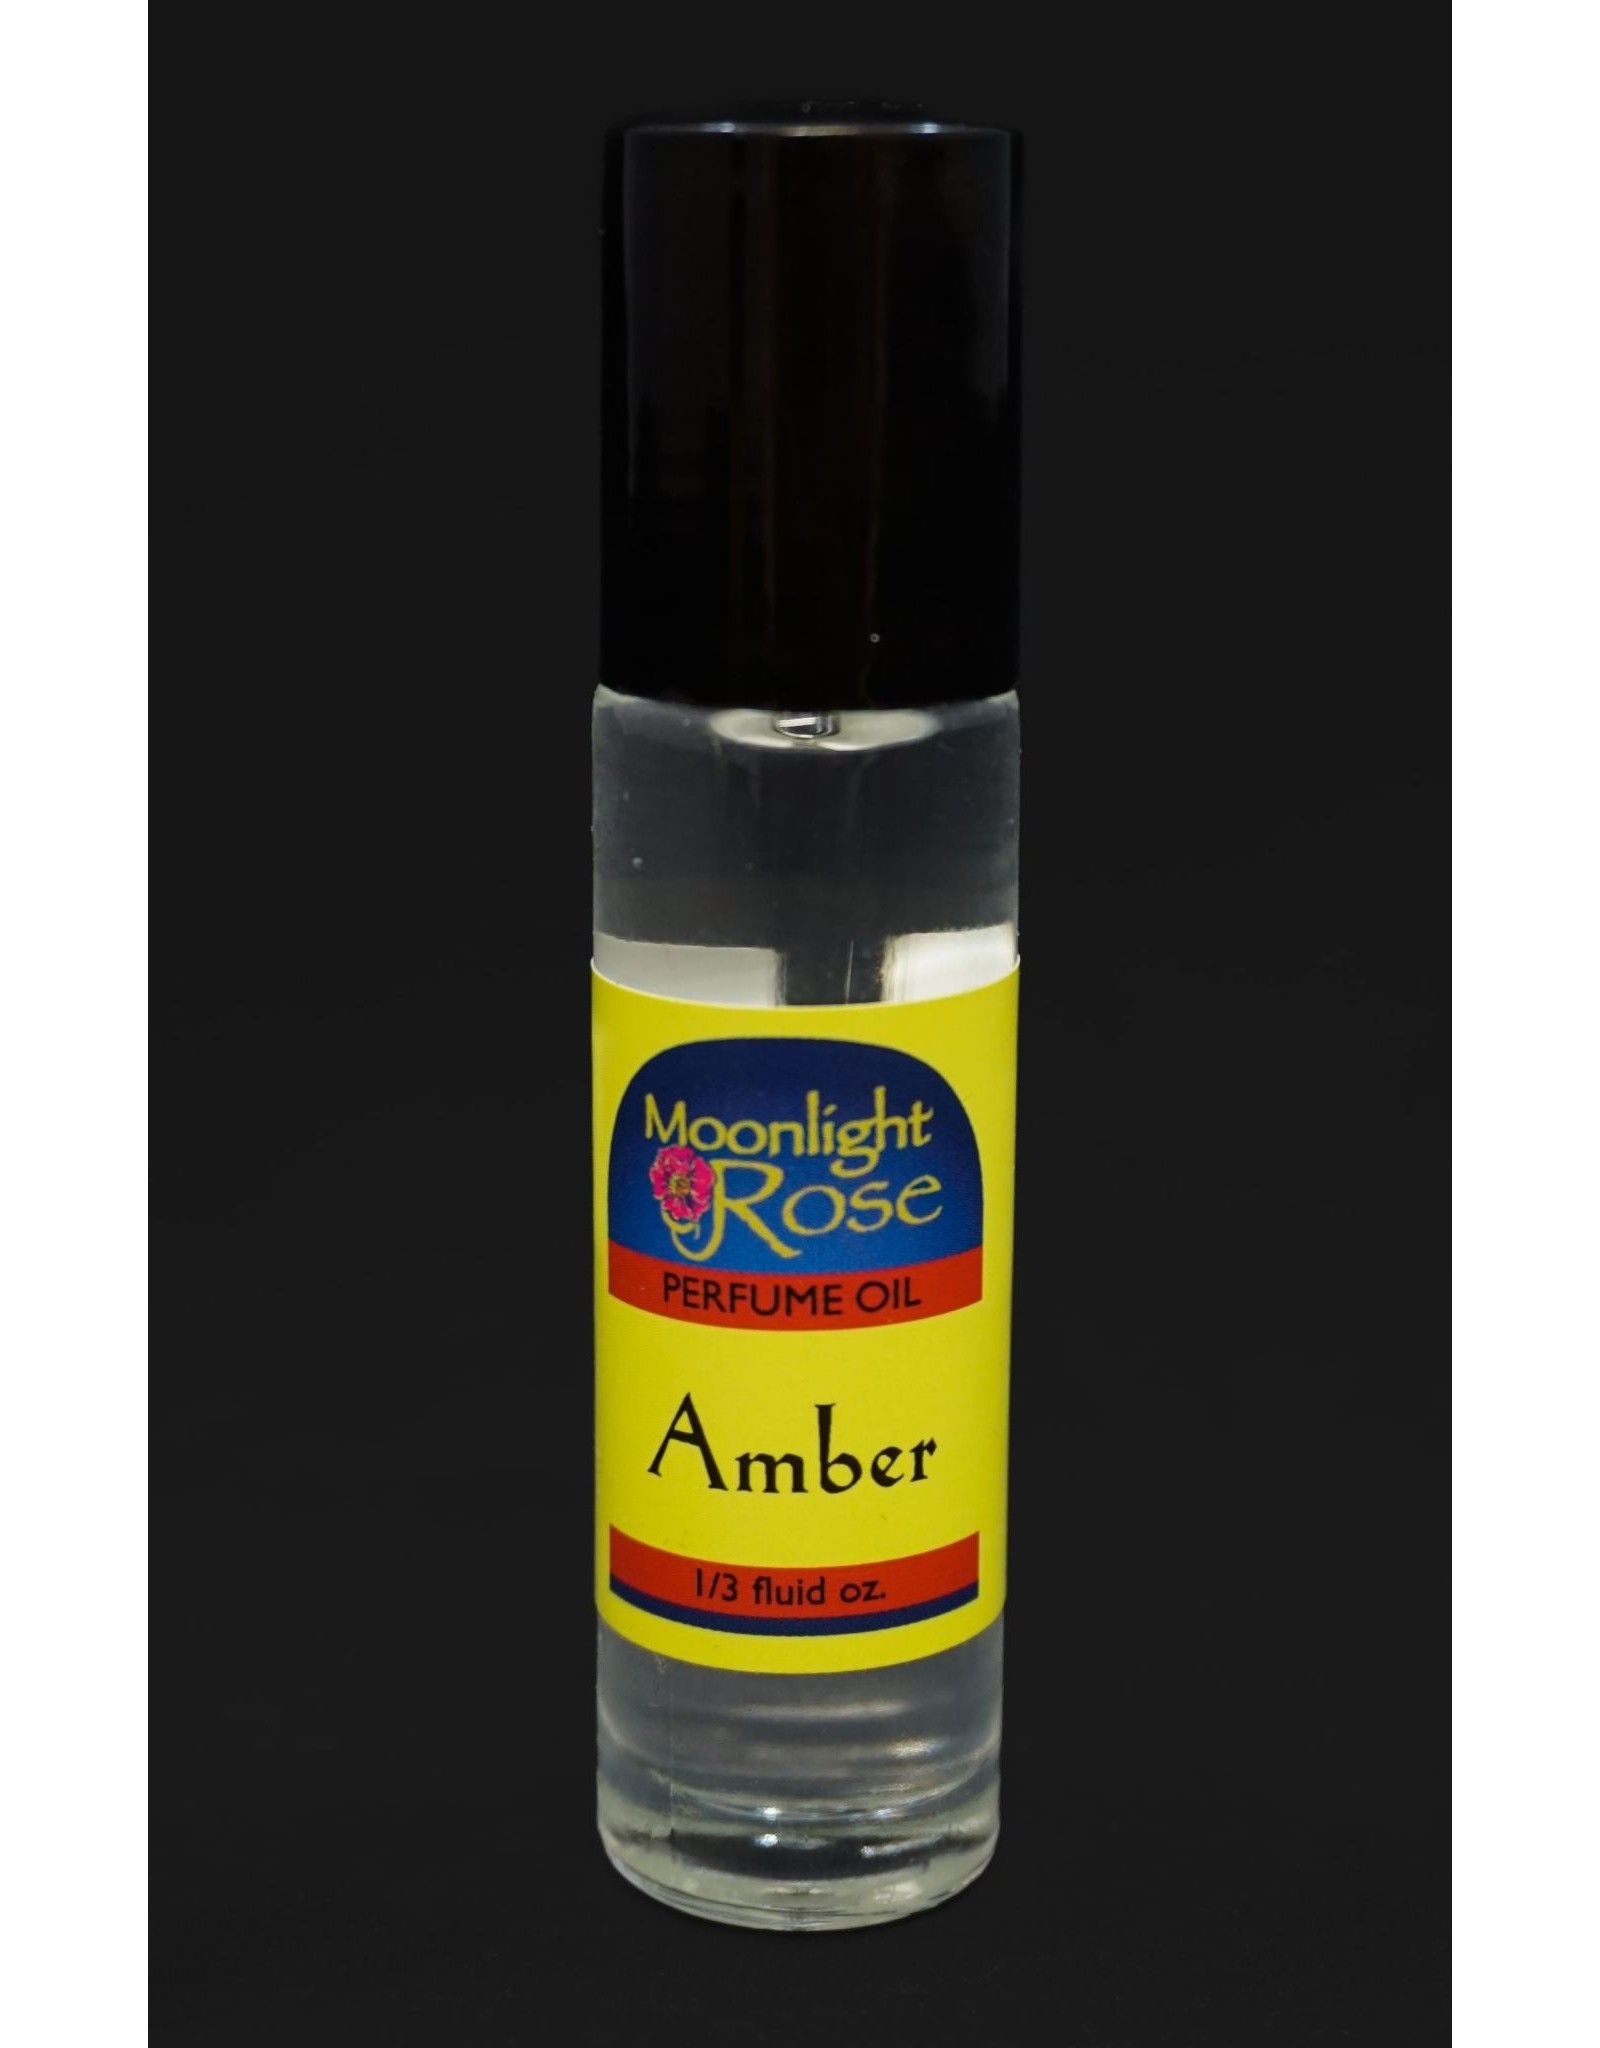 Wild Rose Body Oil - Amber